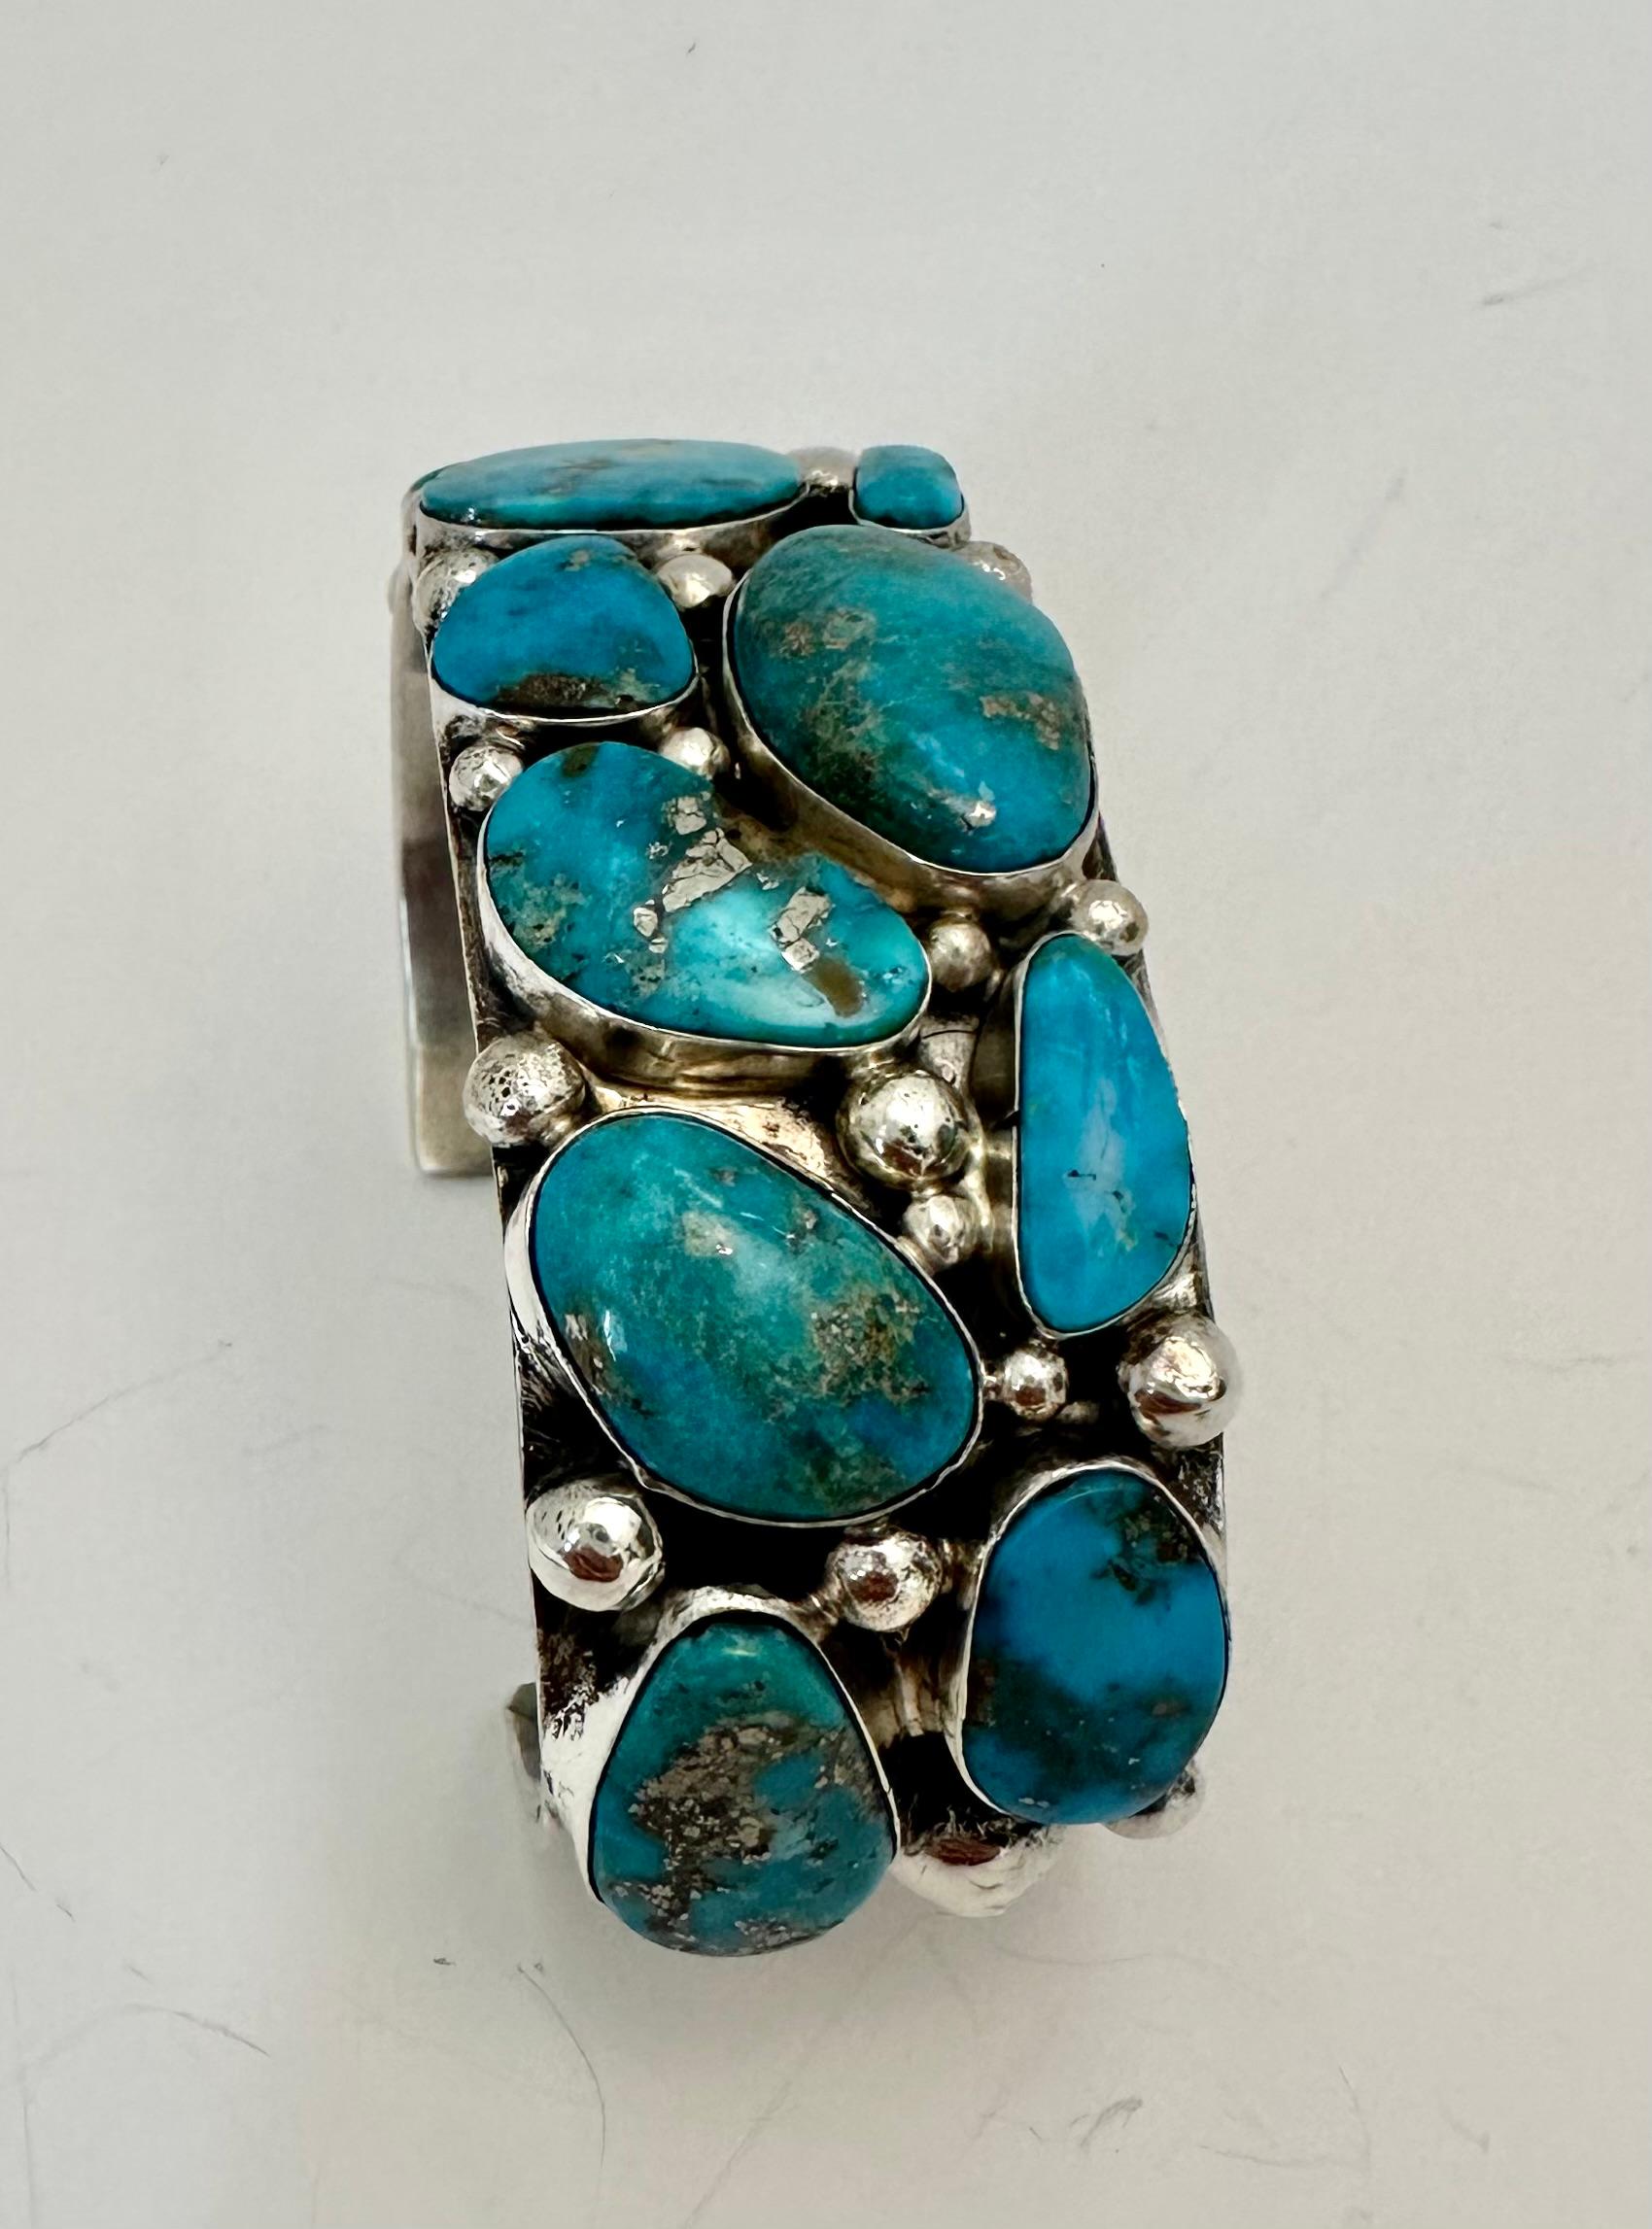 Argent sterling .925  Bracelet manchette en turquoise Blue Ridge signé par l'artiste Navajo Robert Shakey

1